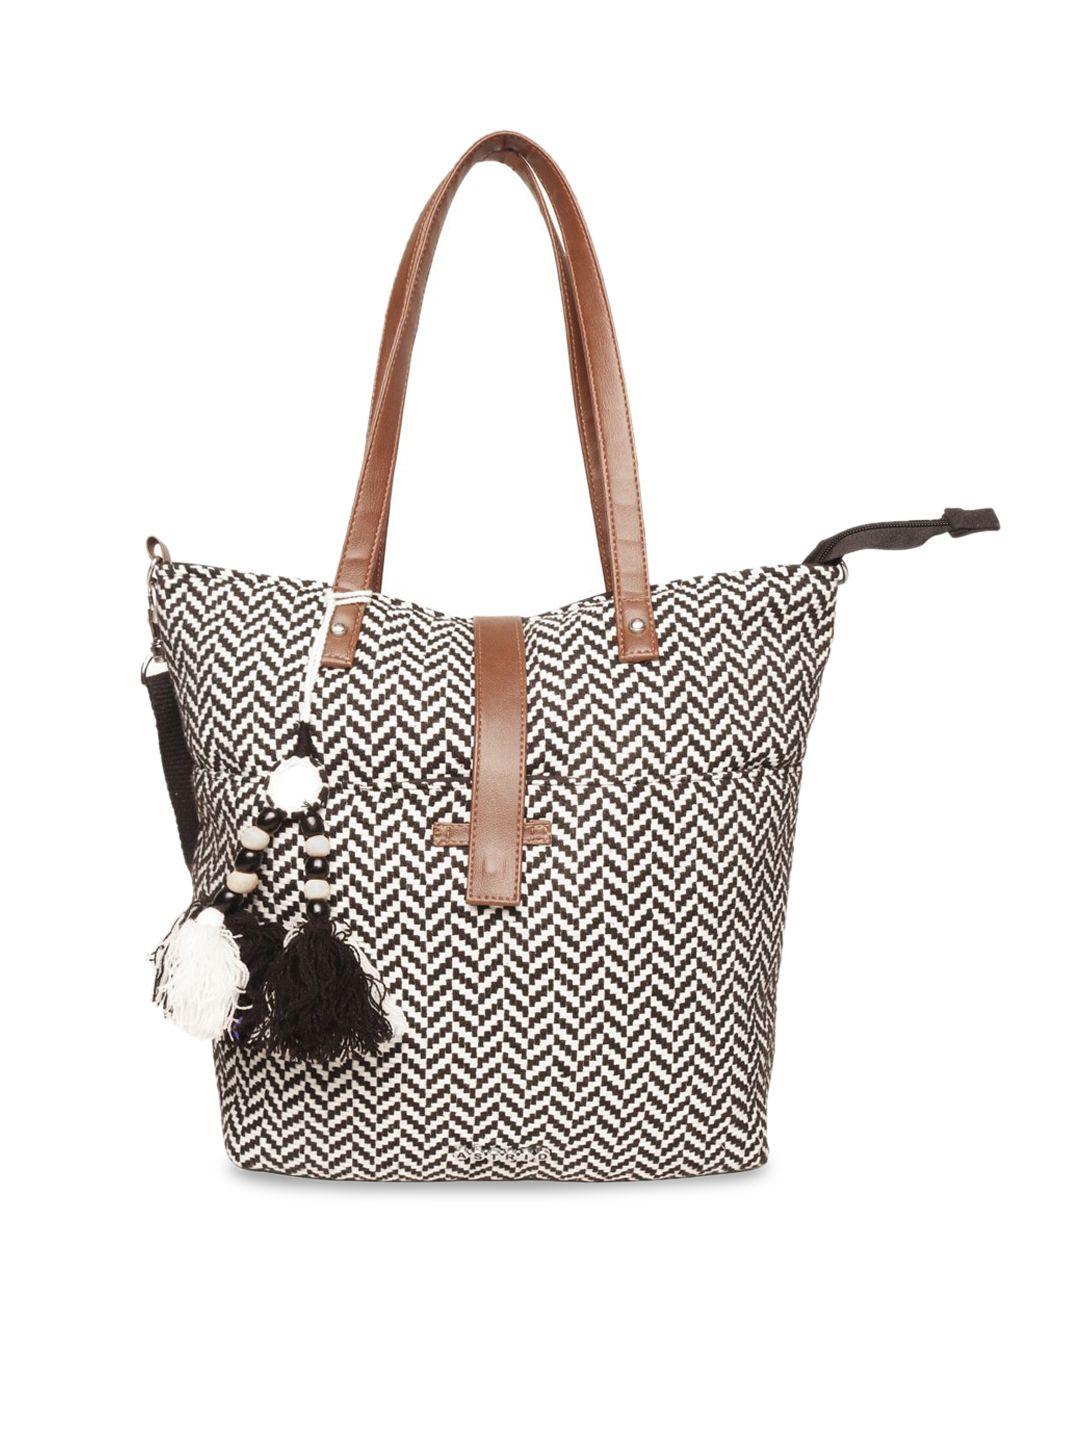 astrid-black-&-off-white-textured-oversized-shopper-tasselled-tote-bag